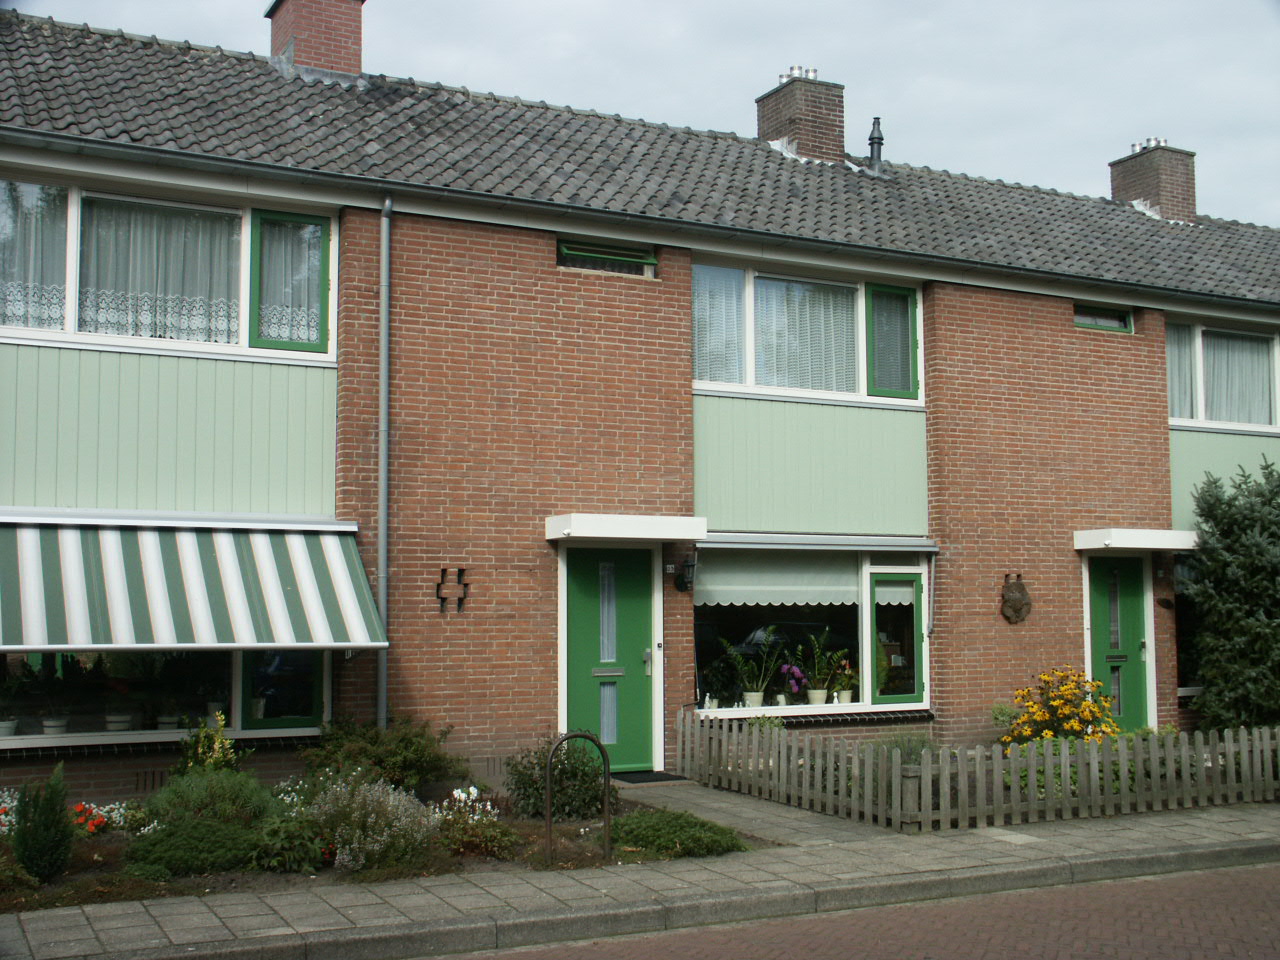 Rozenstraat 23, 7255 XS Hengelo, Nederland